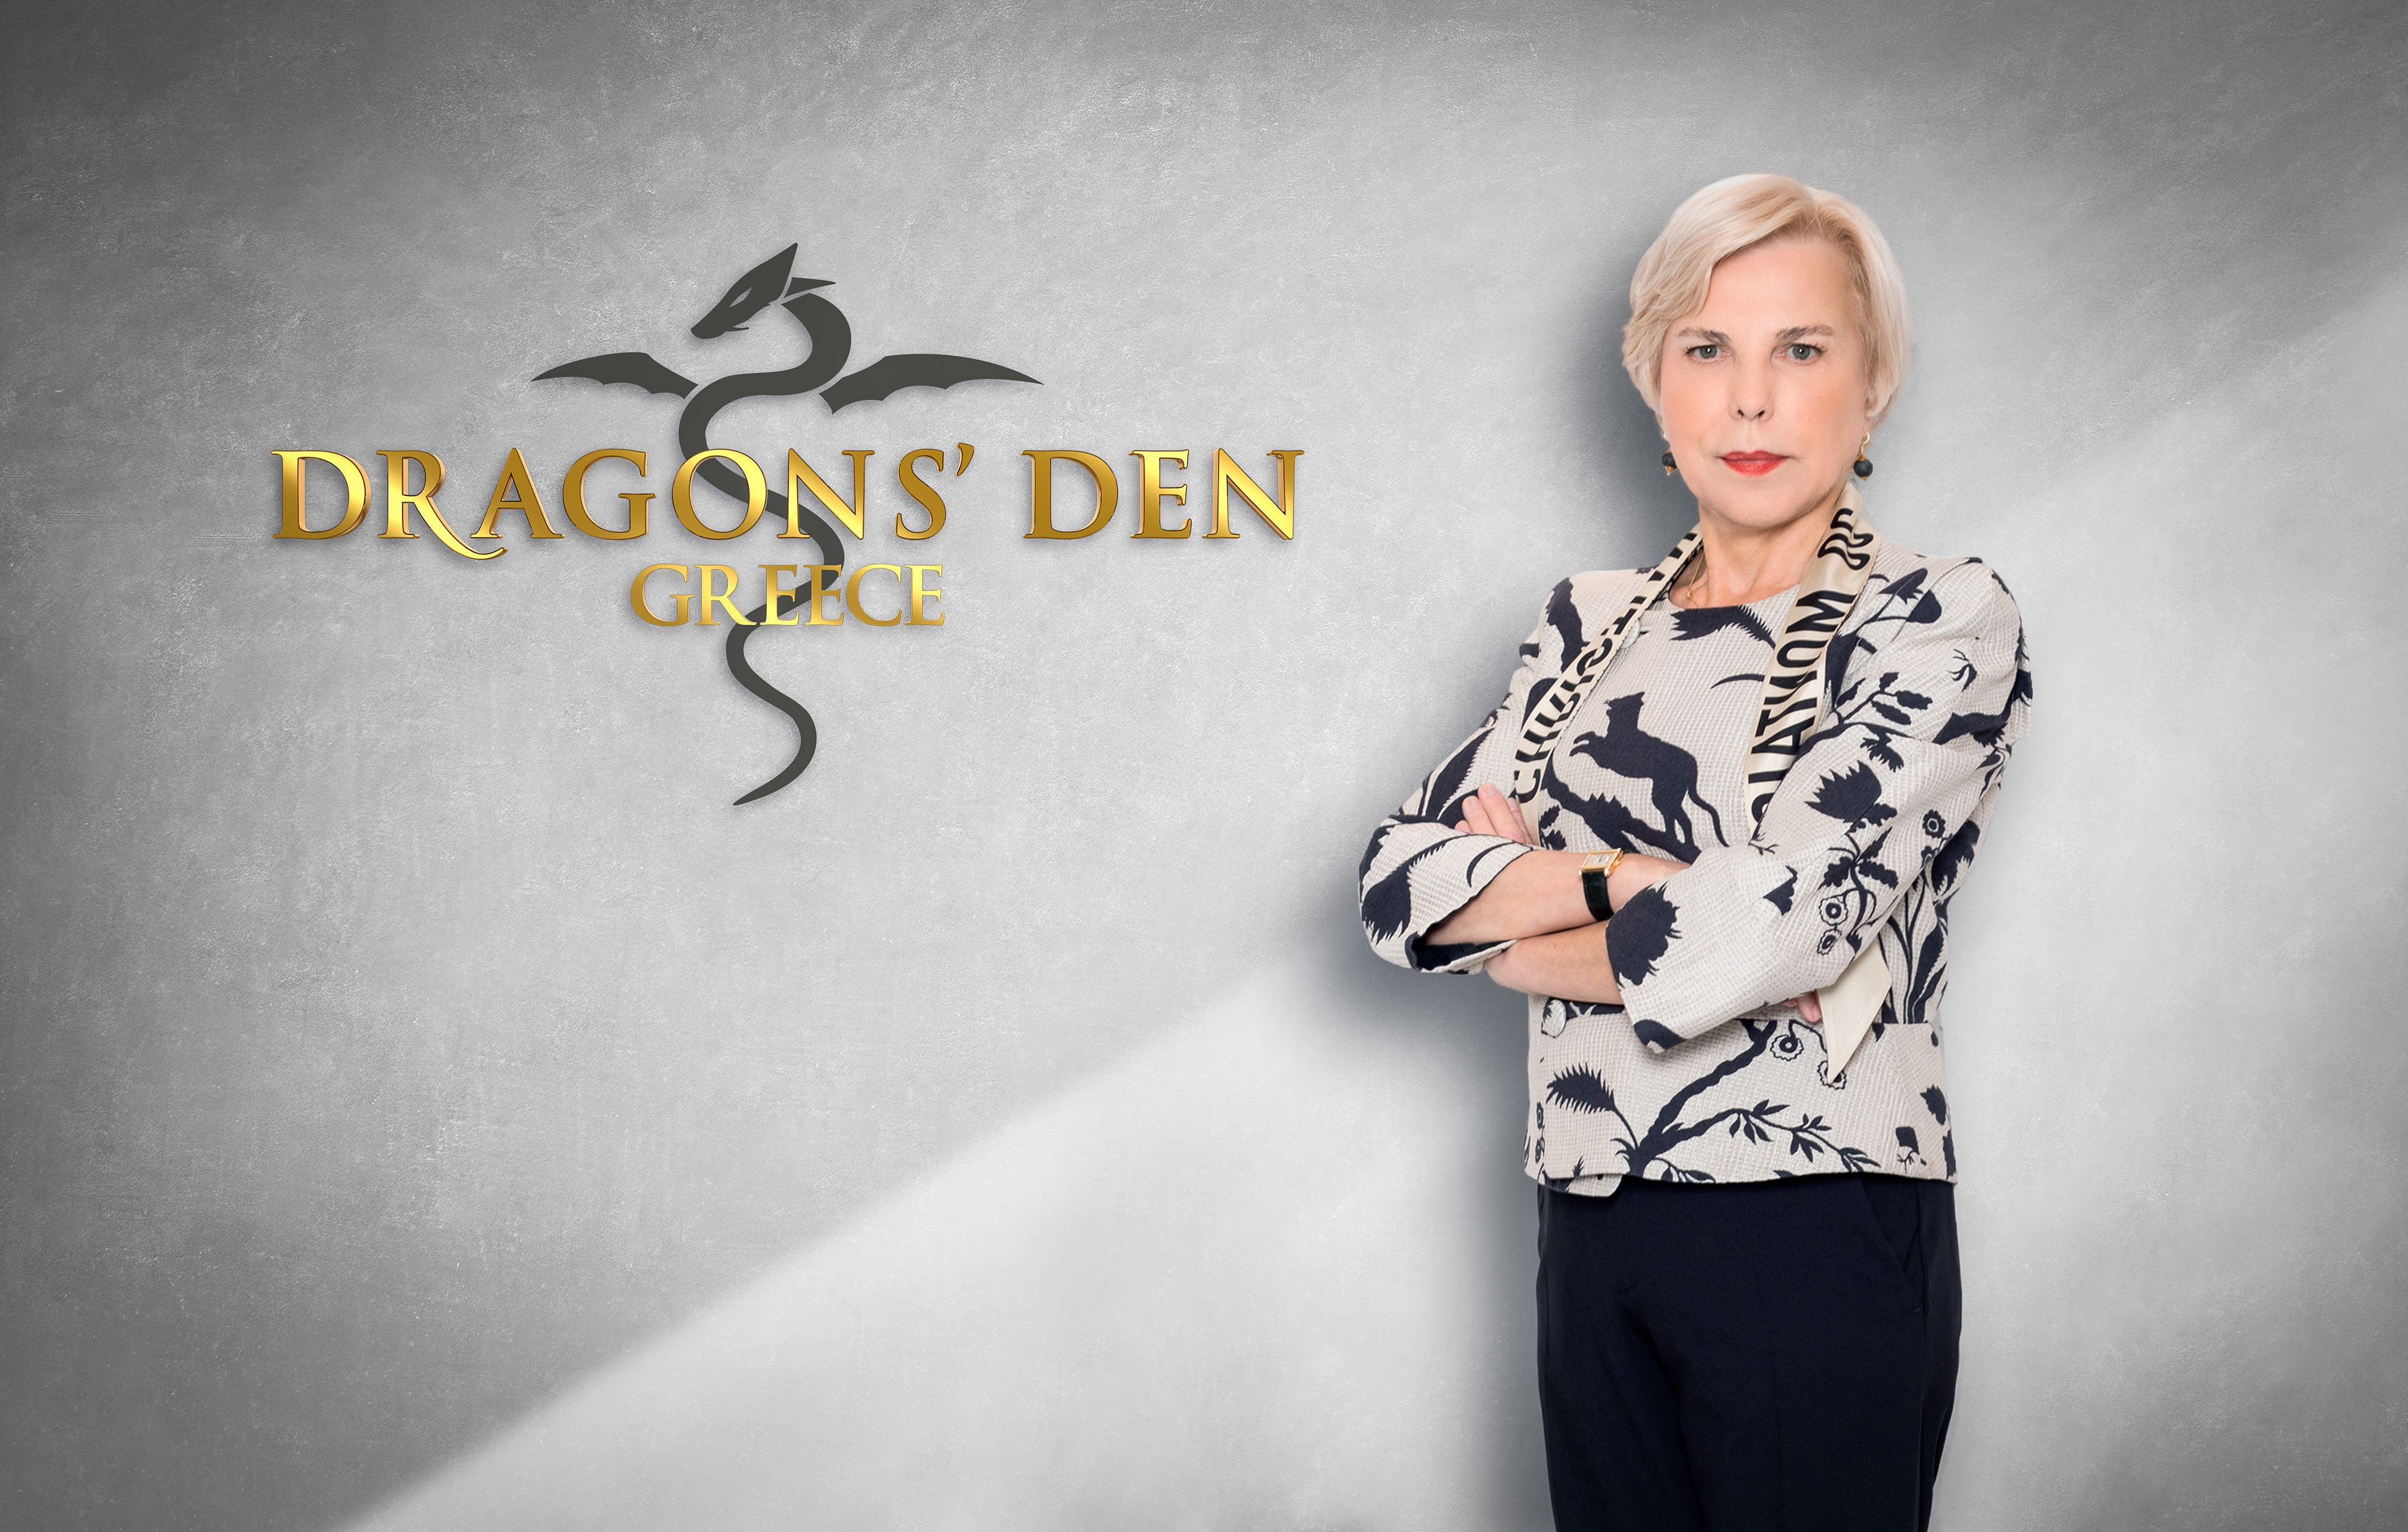 Το "Dragons’ Den Greece" έρχεται στον ΑΝΤ1: Ο παρουσιαστής και οι "Dragons"- έκπληξη